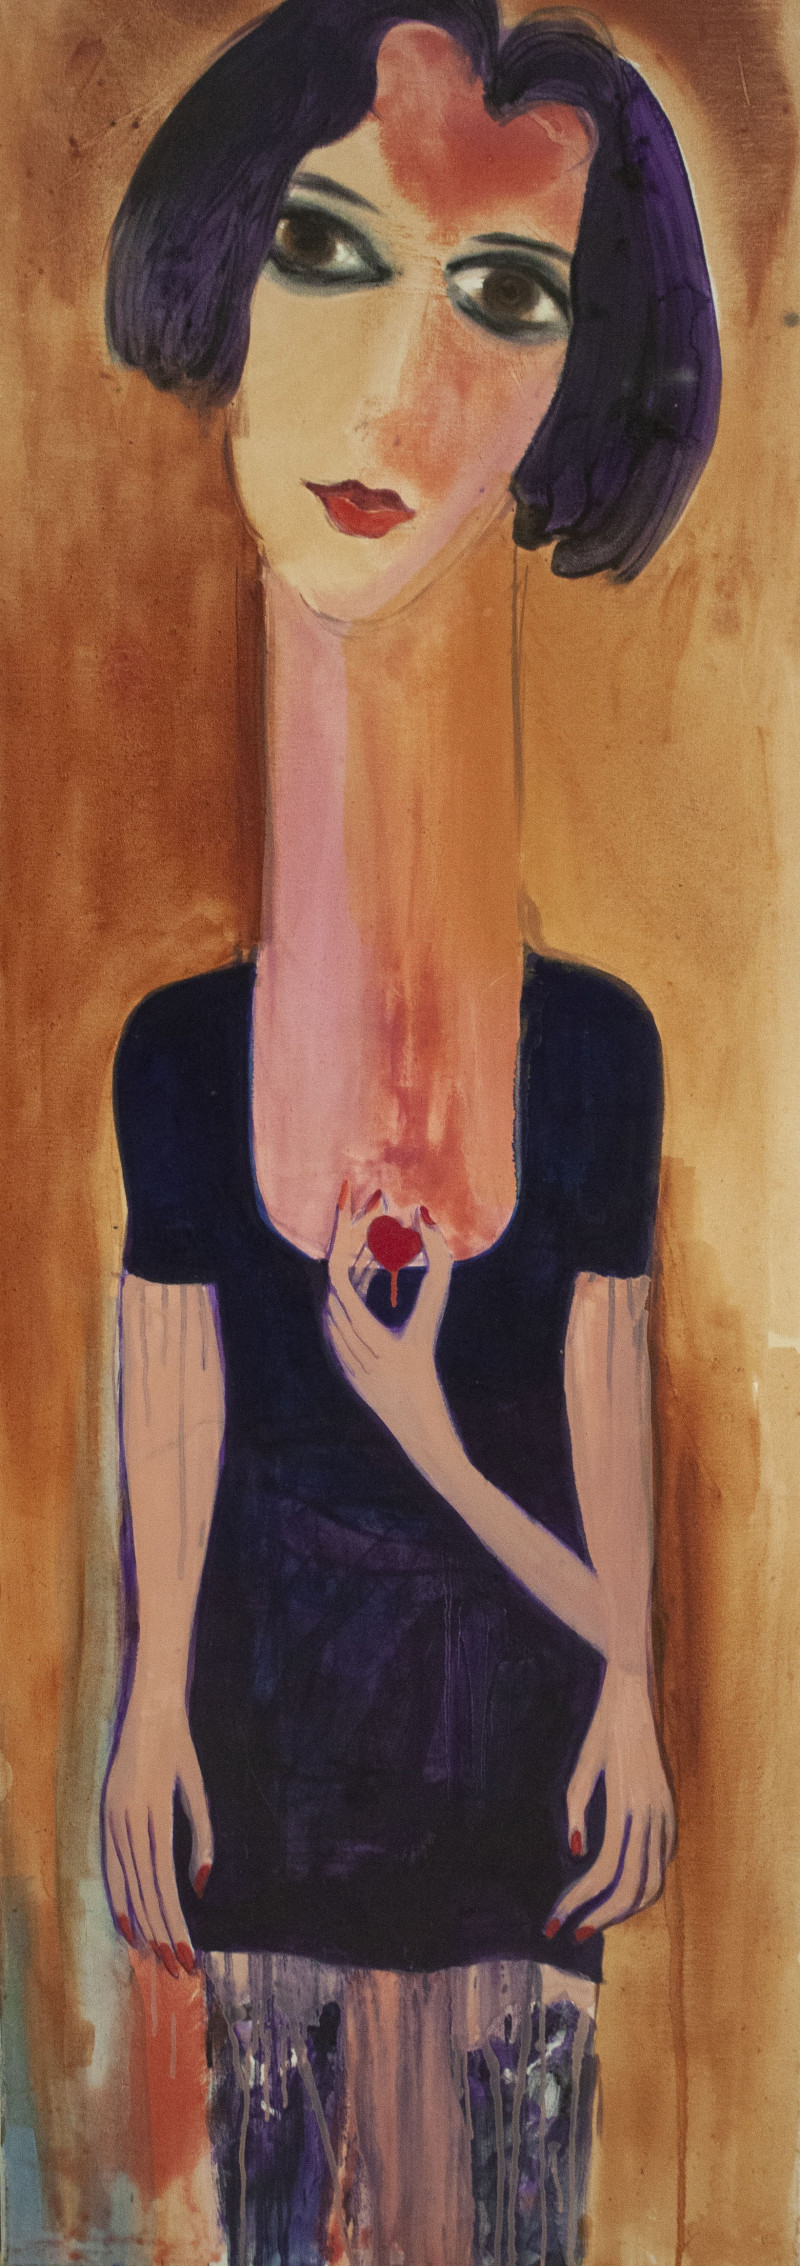 Linas Cicėnas tapytas paveikslas Zuza, Išlaisvinta fantazija , paveikslai internetu